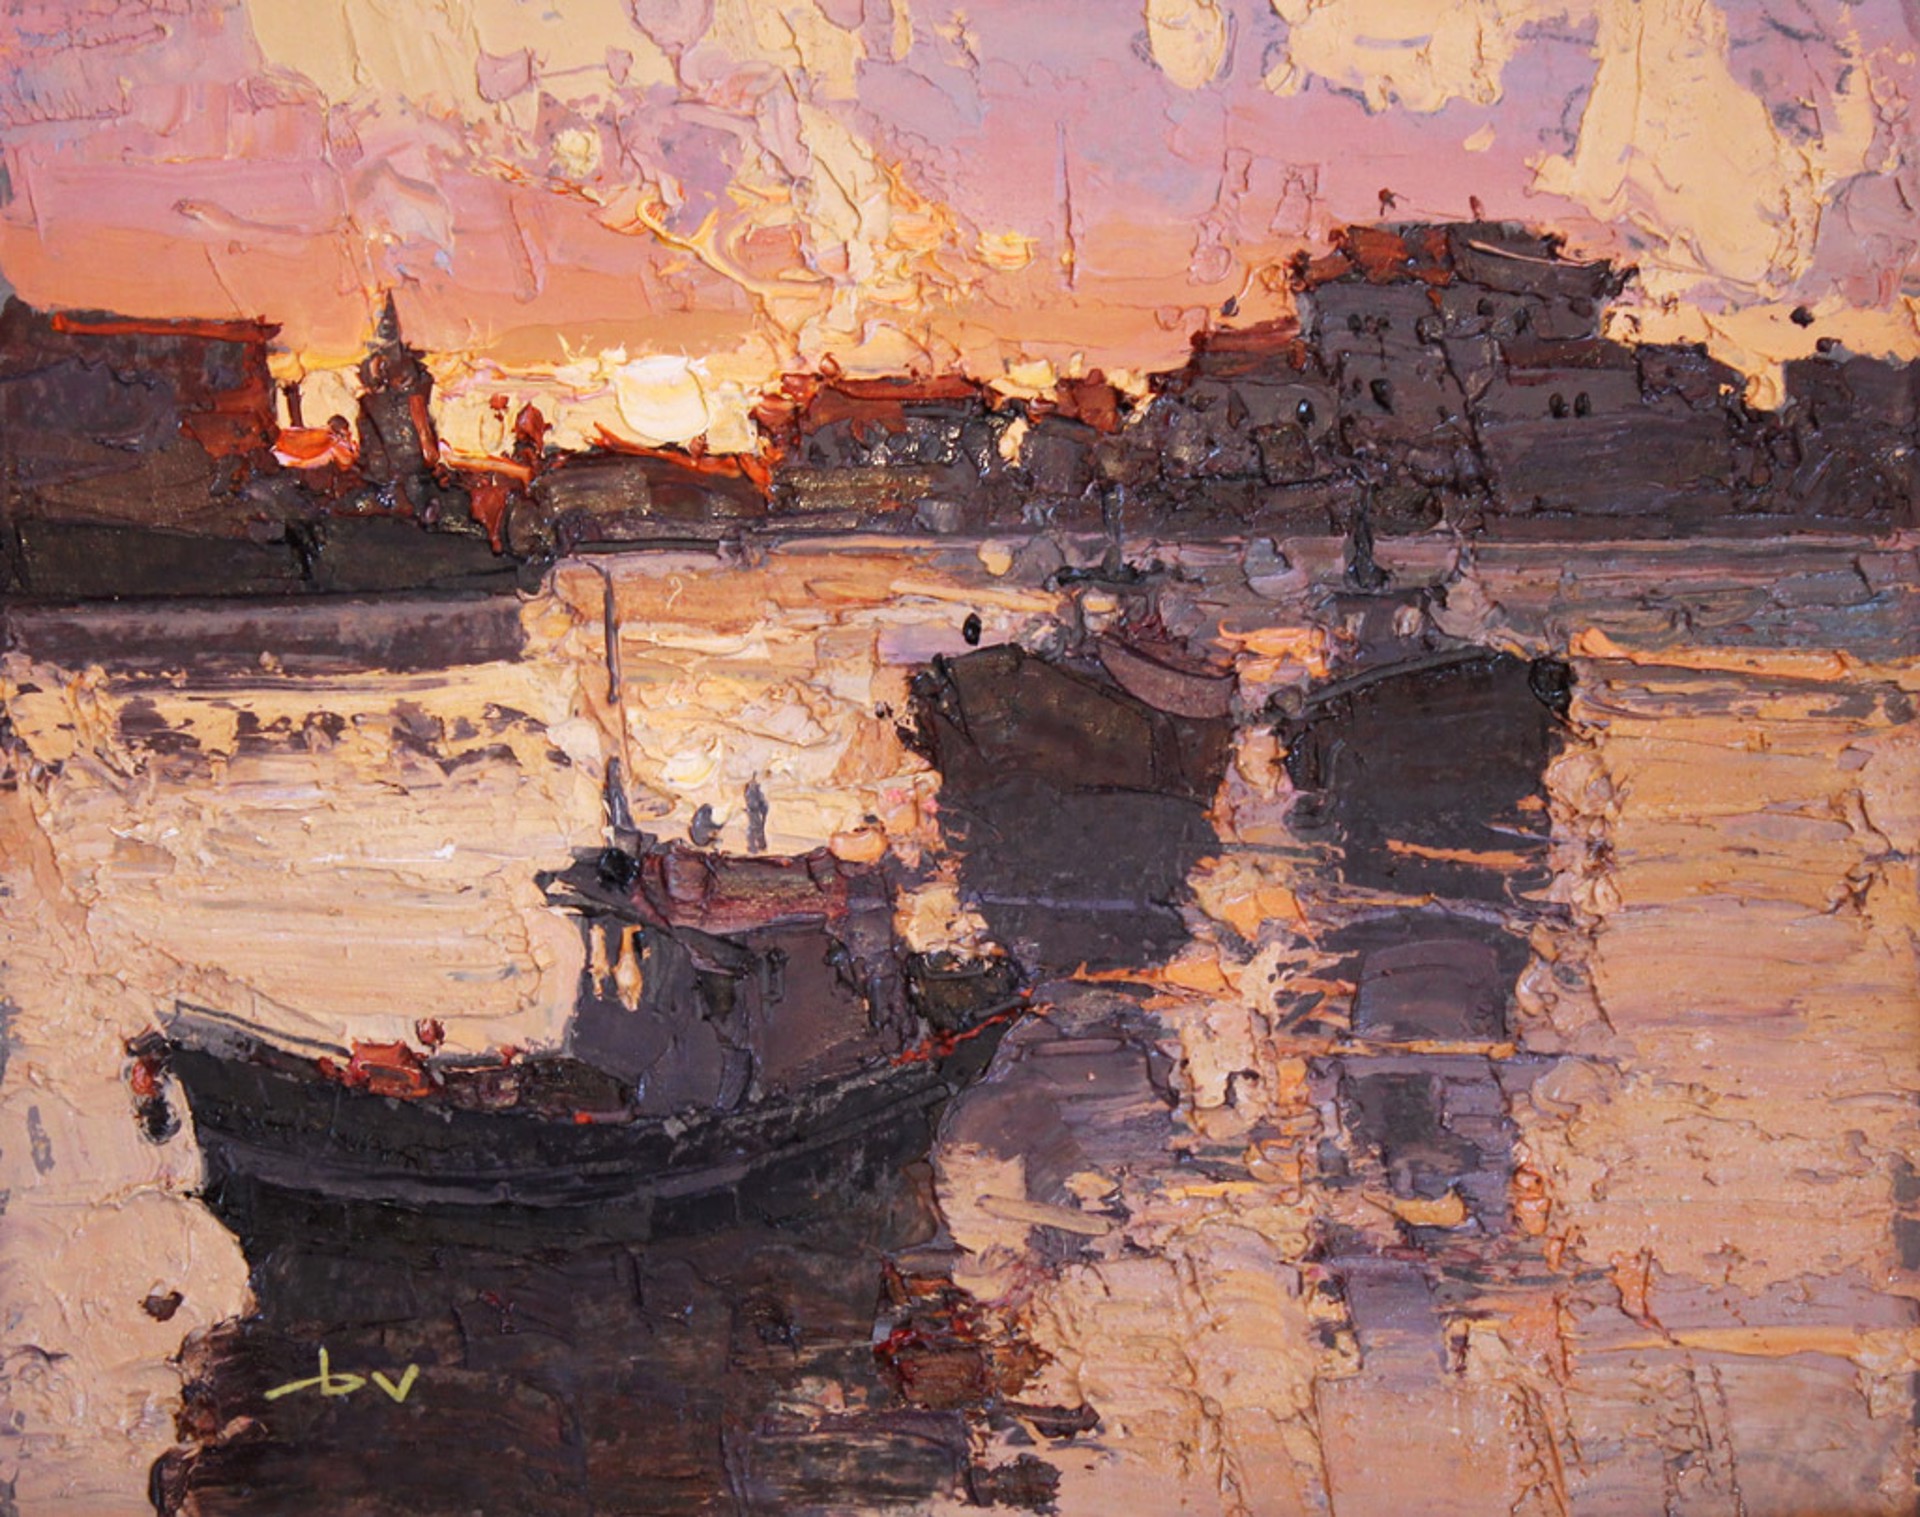 Morning in the Port by Daniil Volkov